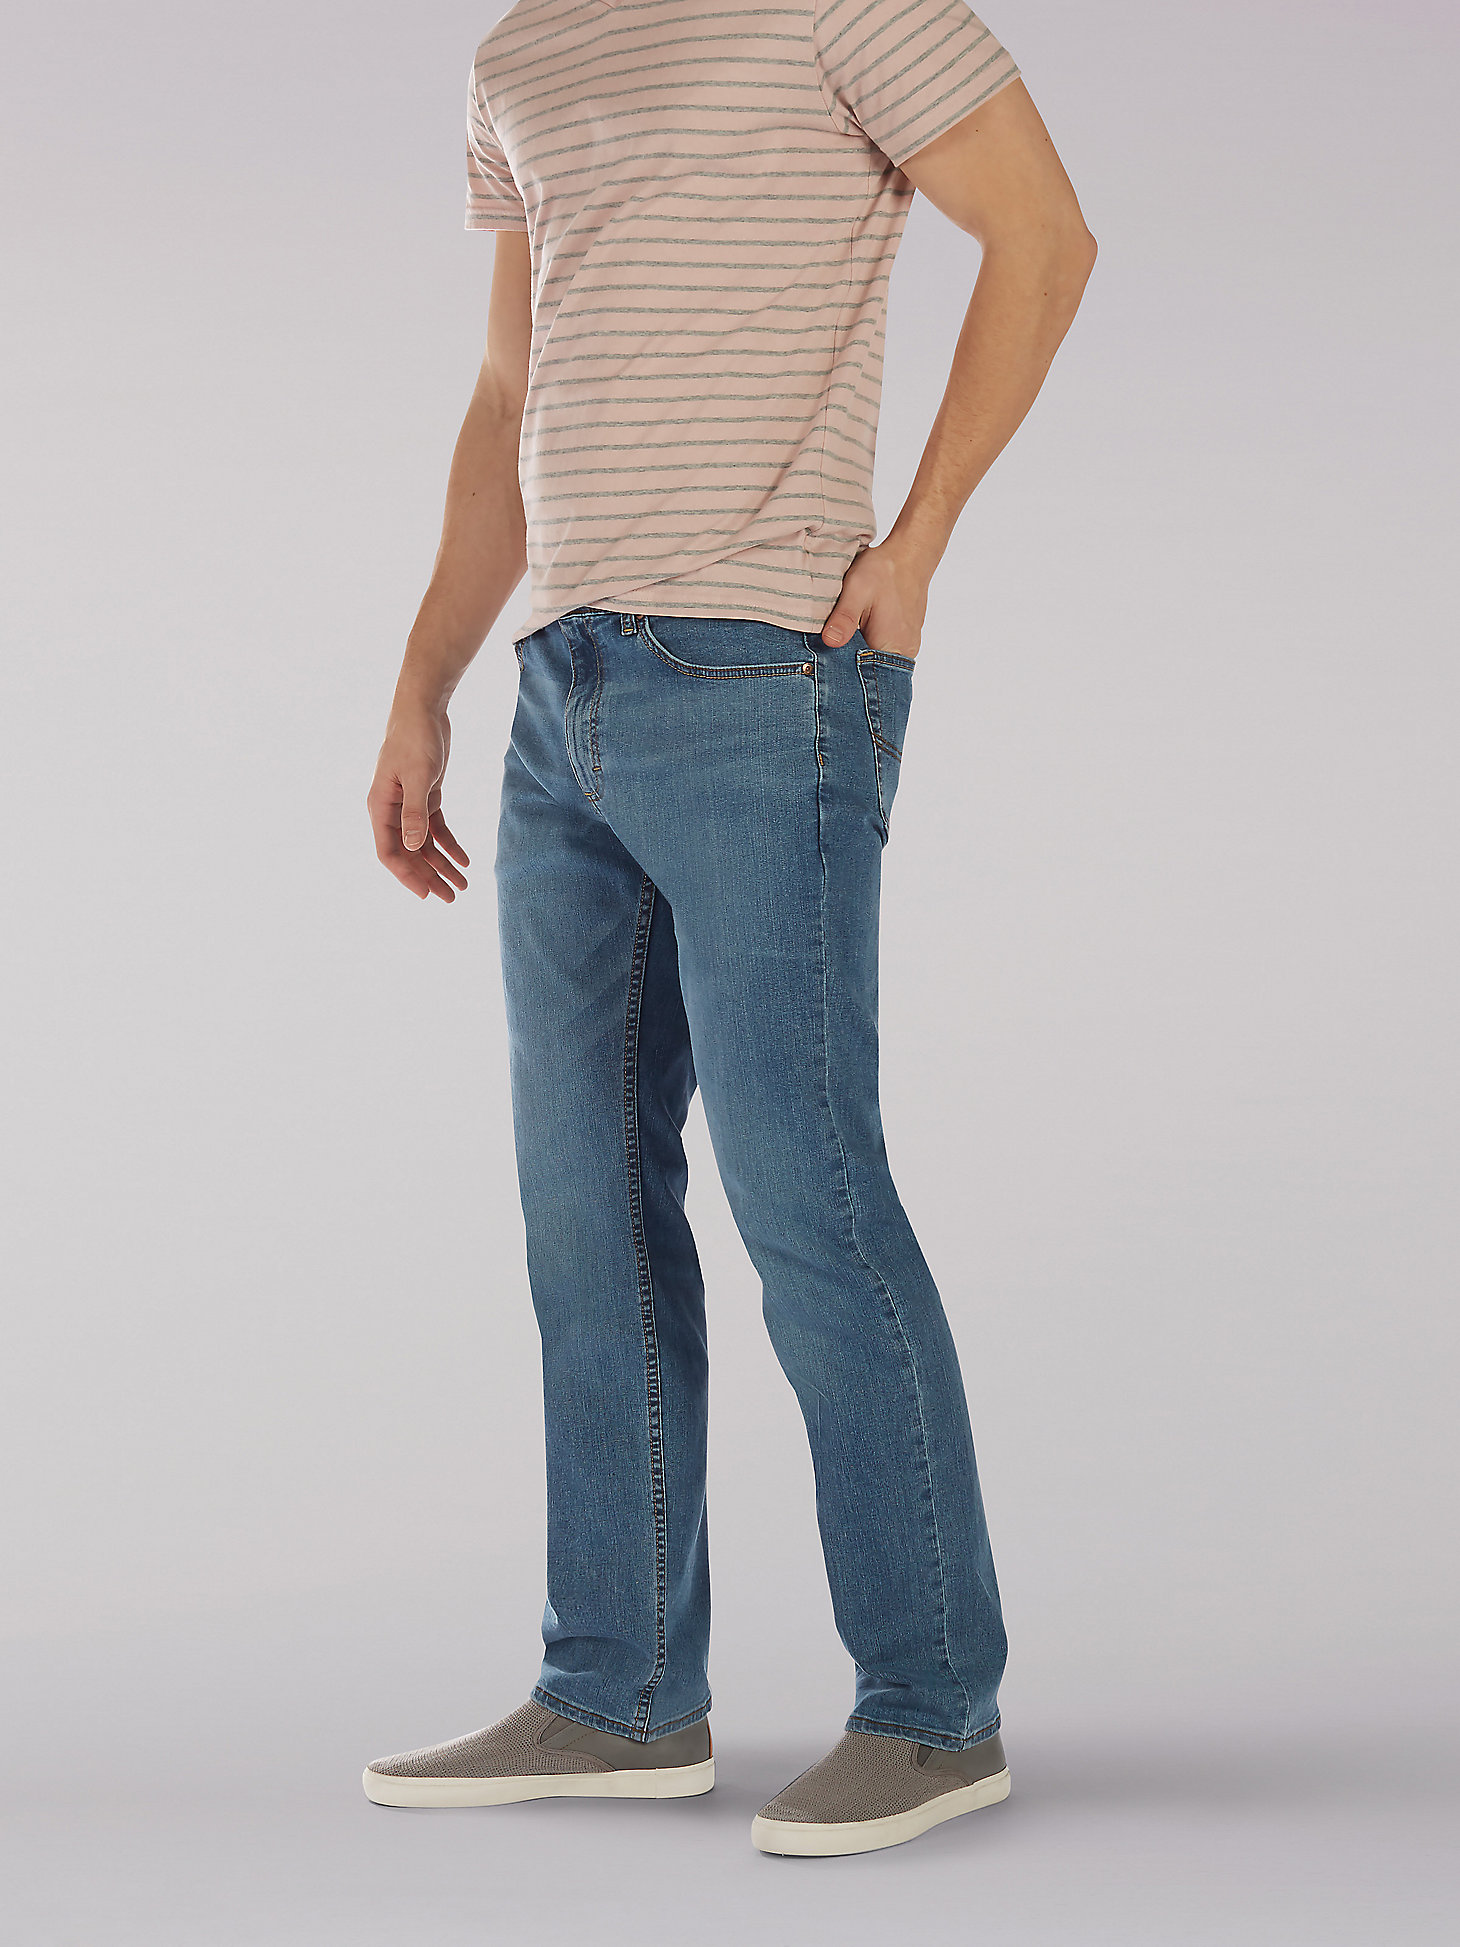 Men’s Premium Flex Classic Fit Jeans in Rascal alternative view 2